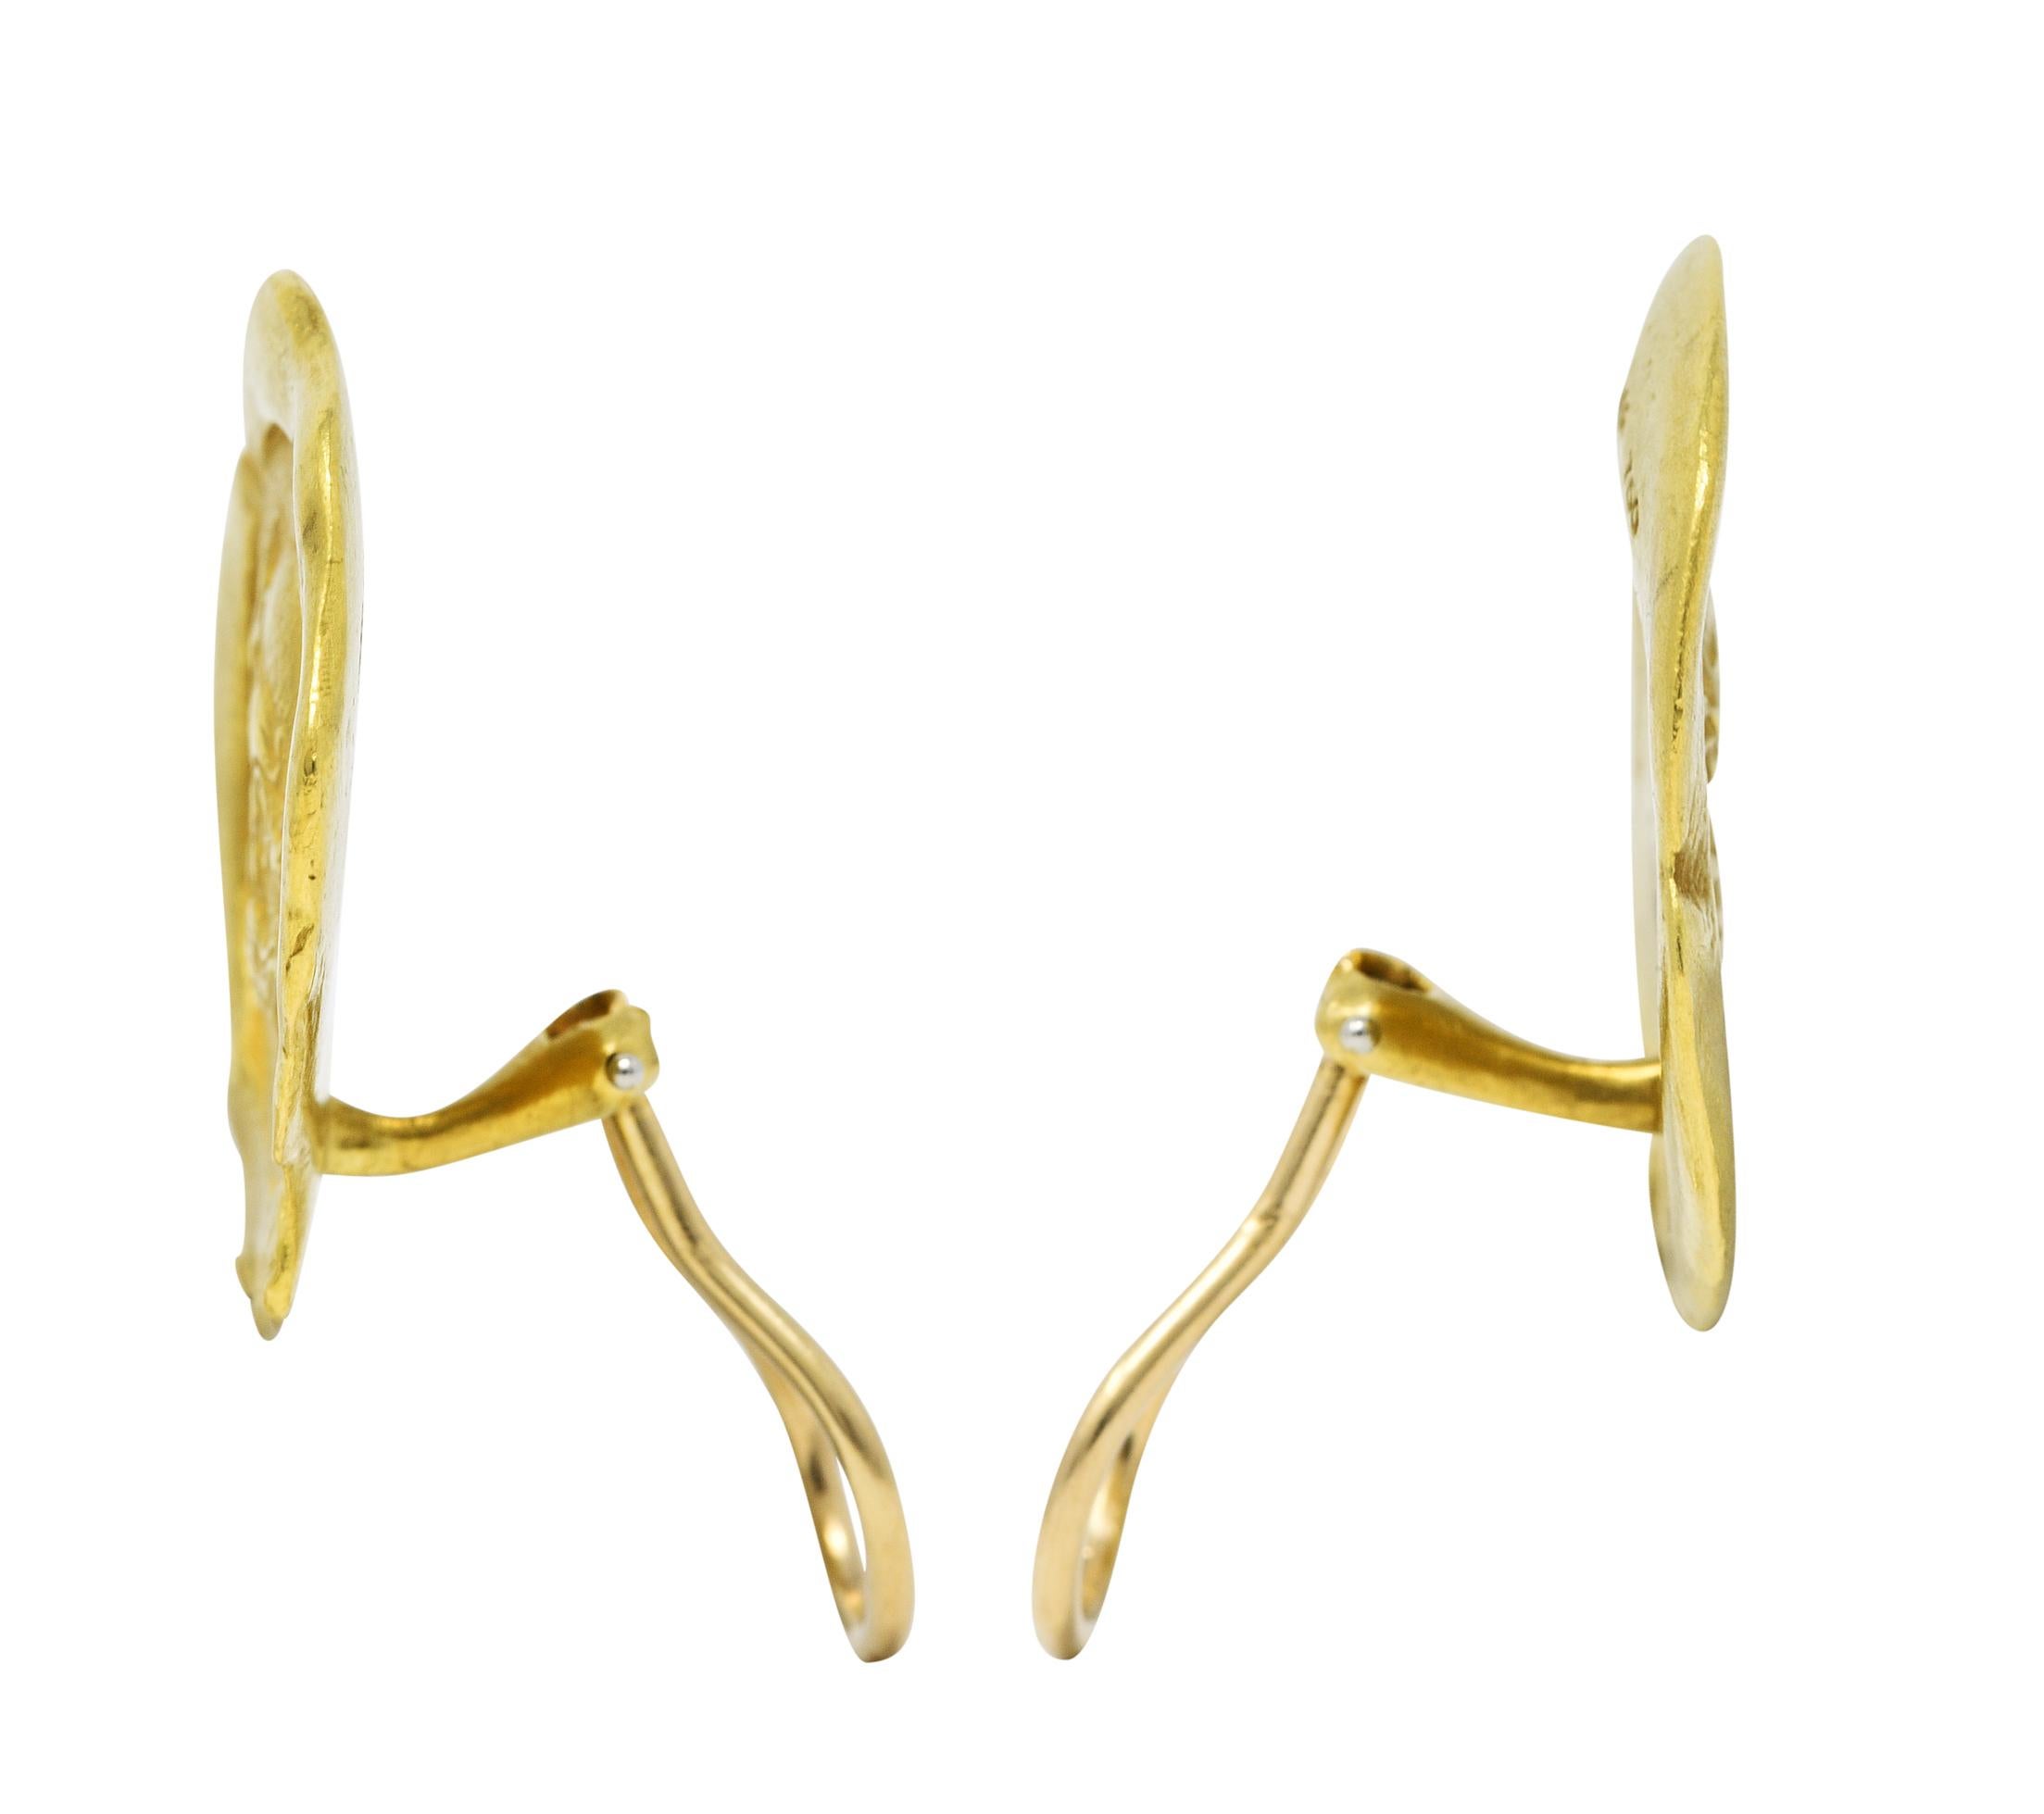 Contemporary 1986 Kieselstein Cord 18 Karat Yellow Gold Poseidon Ear-Clip Earrings